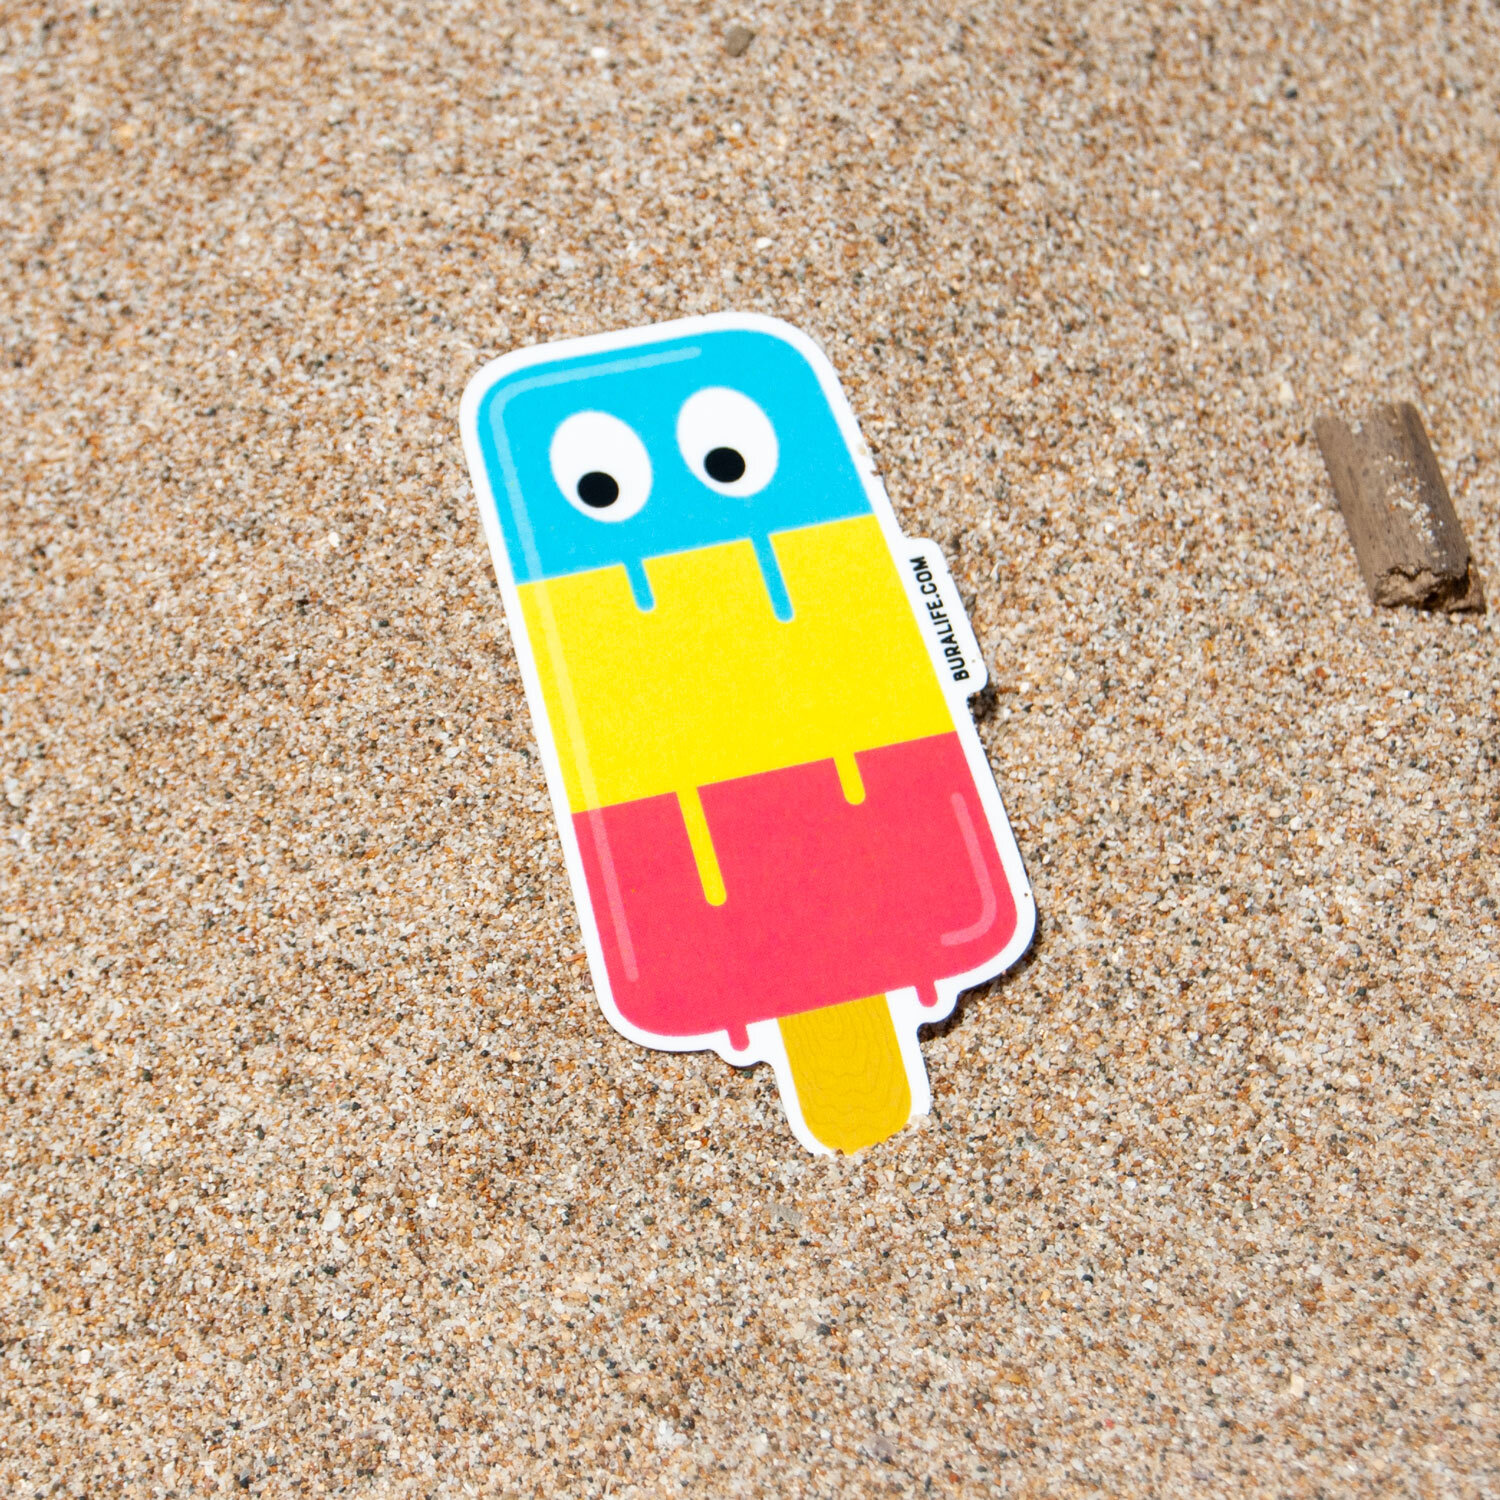 icecream_sticker_sand